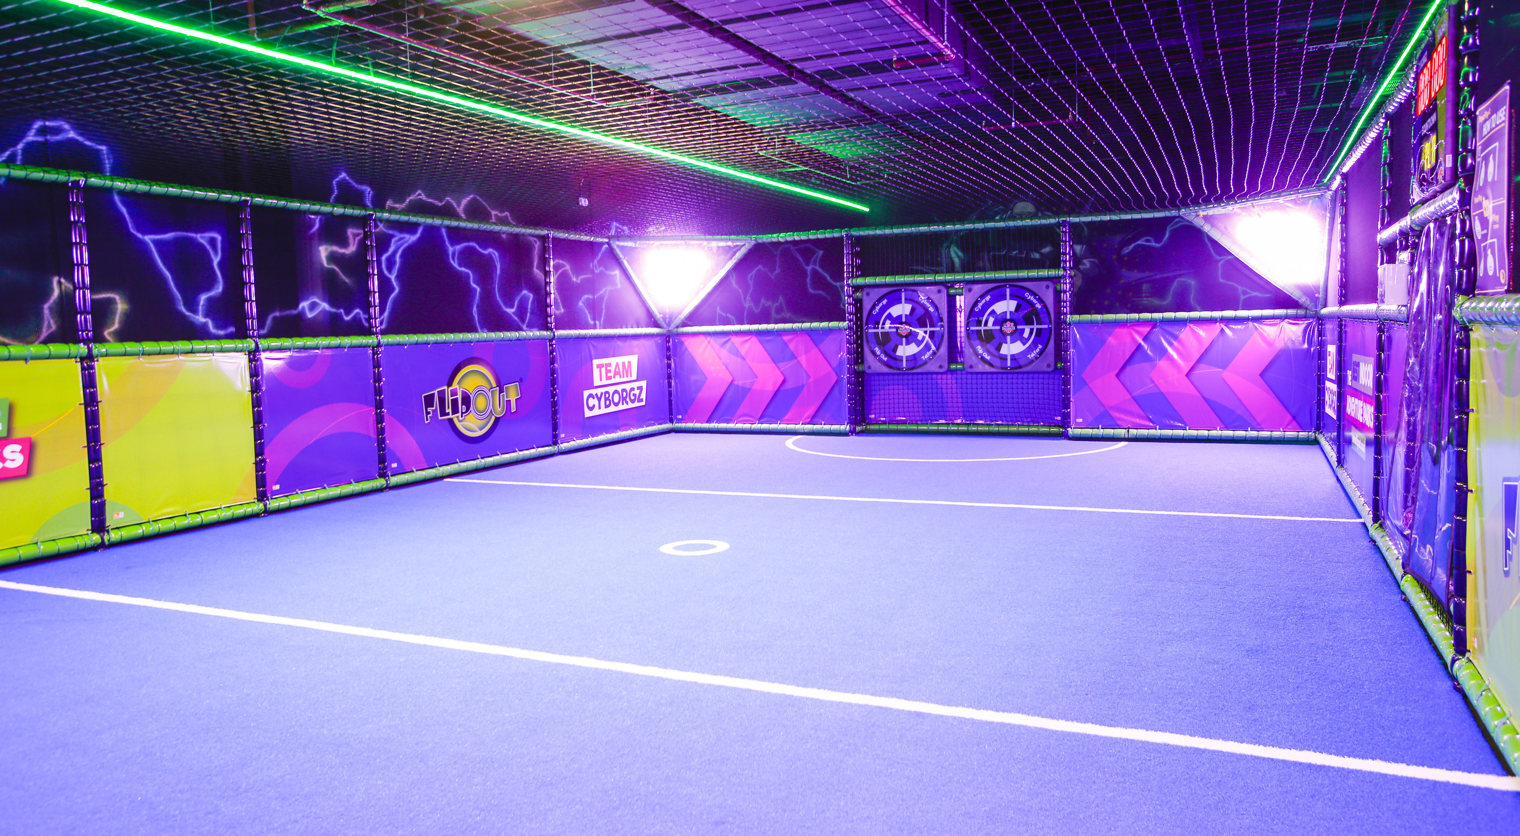 Interactive Handball courts at Flip Out UK